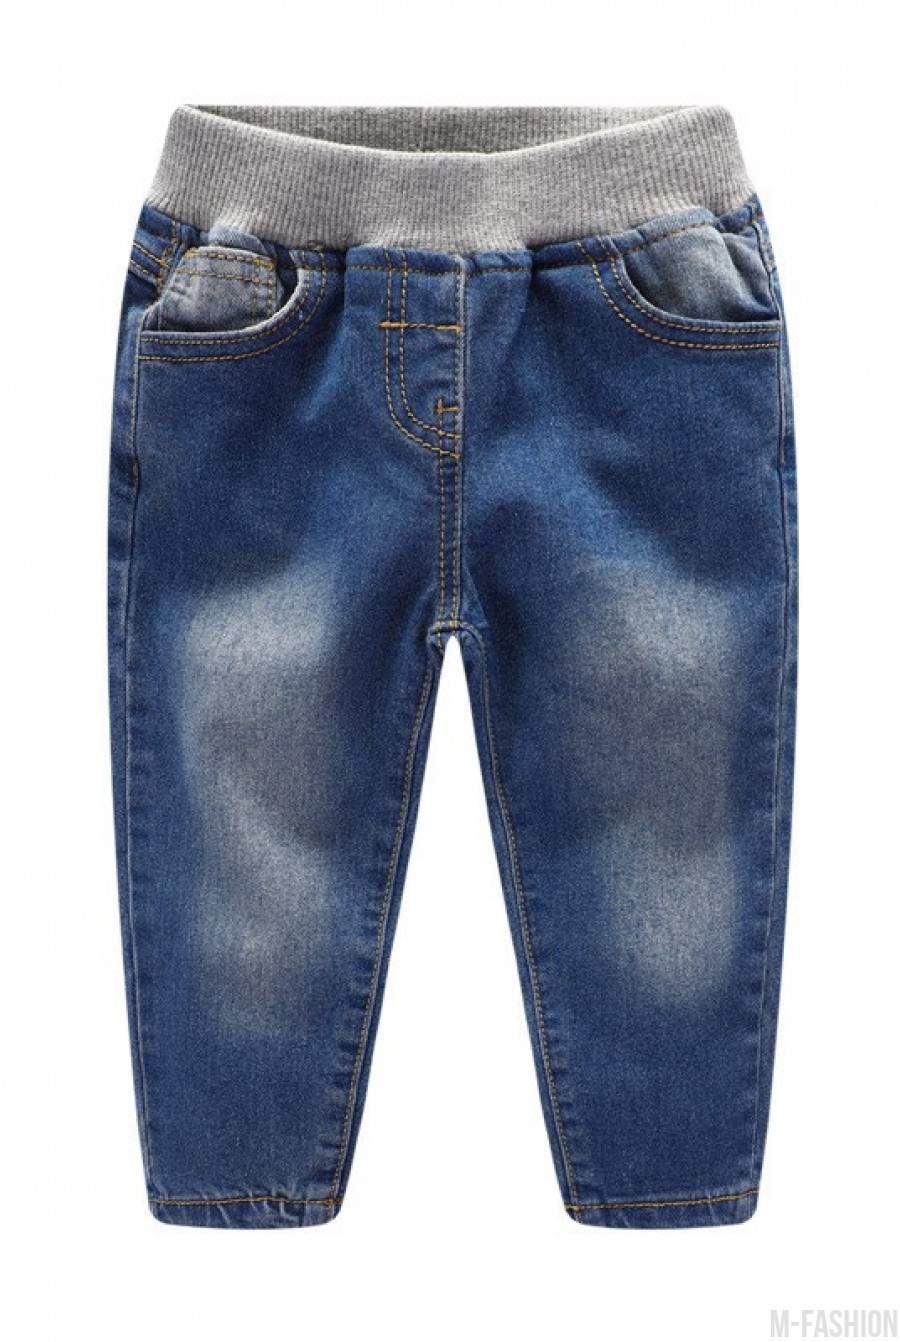 Зауженные джинсы с потертостями на резинке- Фото 2